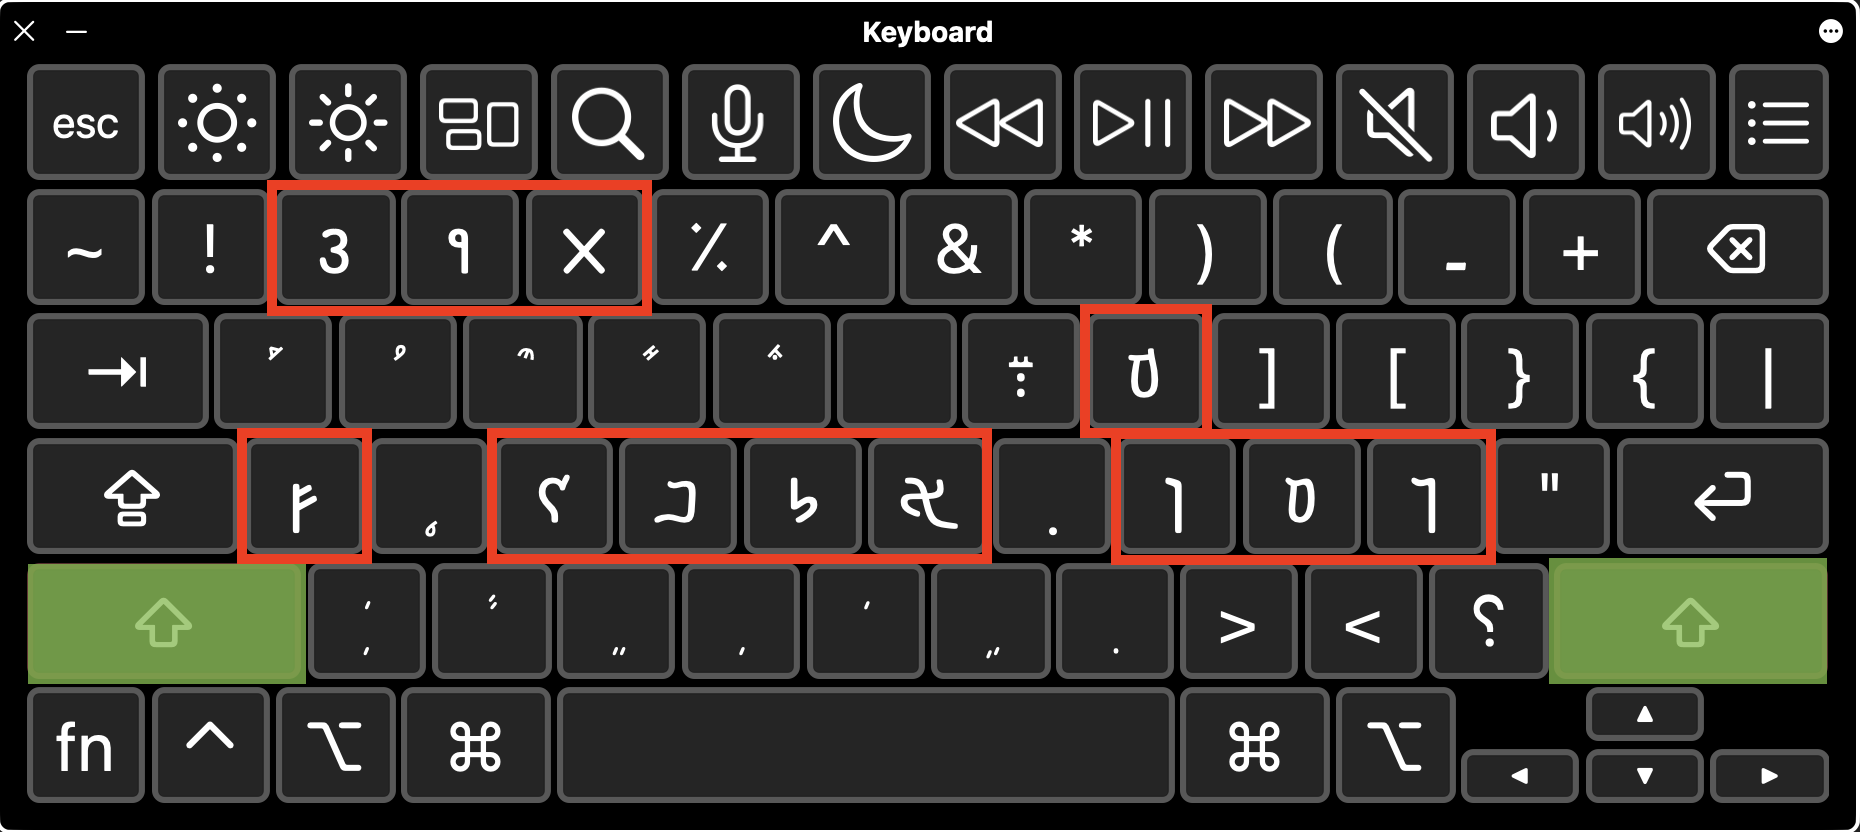 keyboard-layout-shift